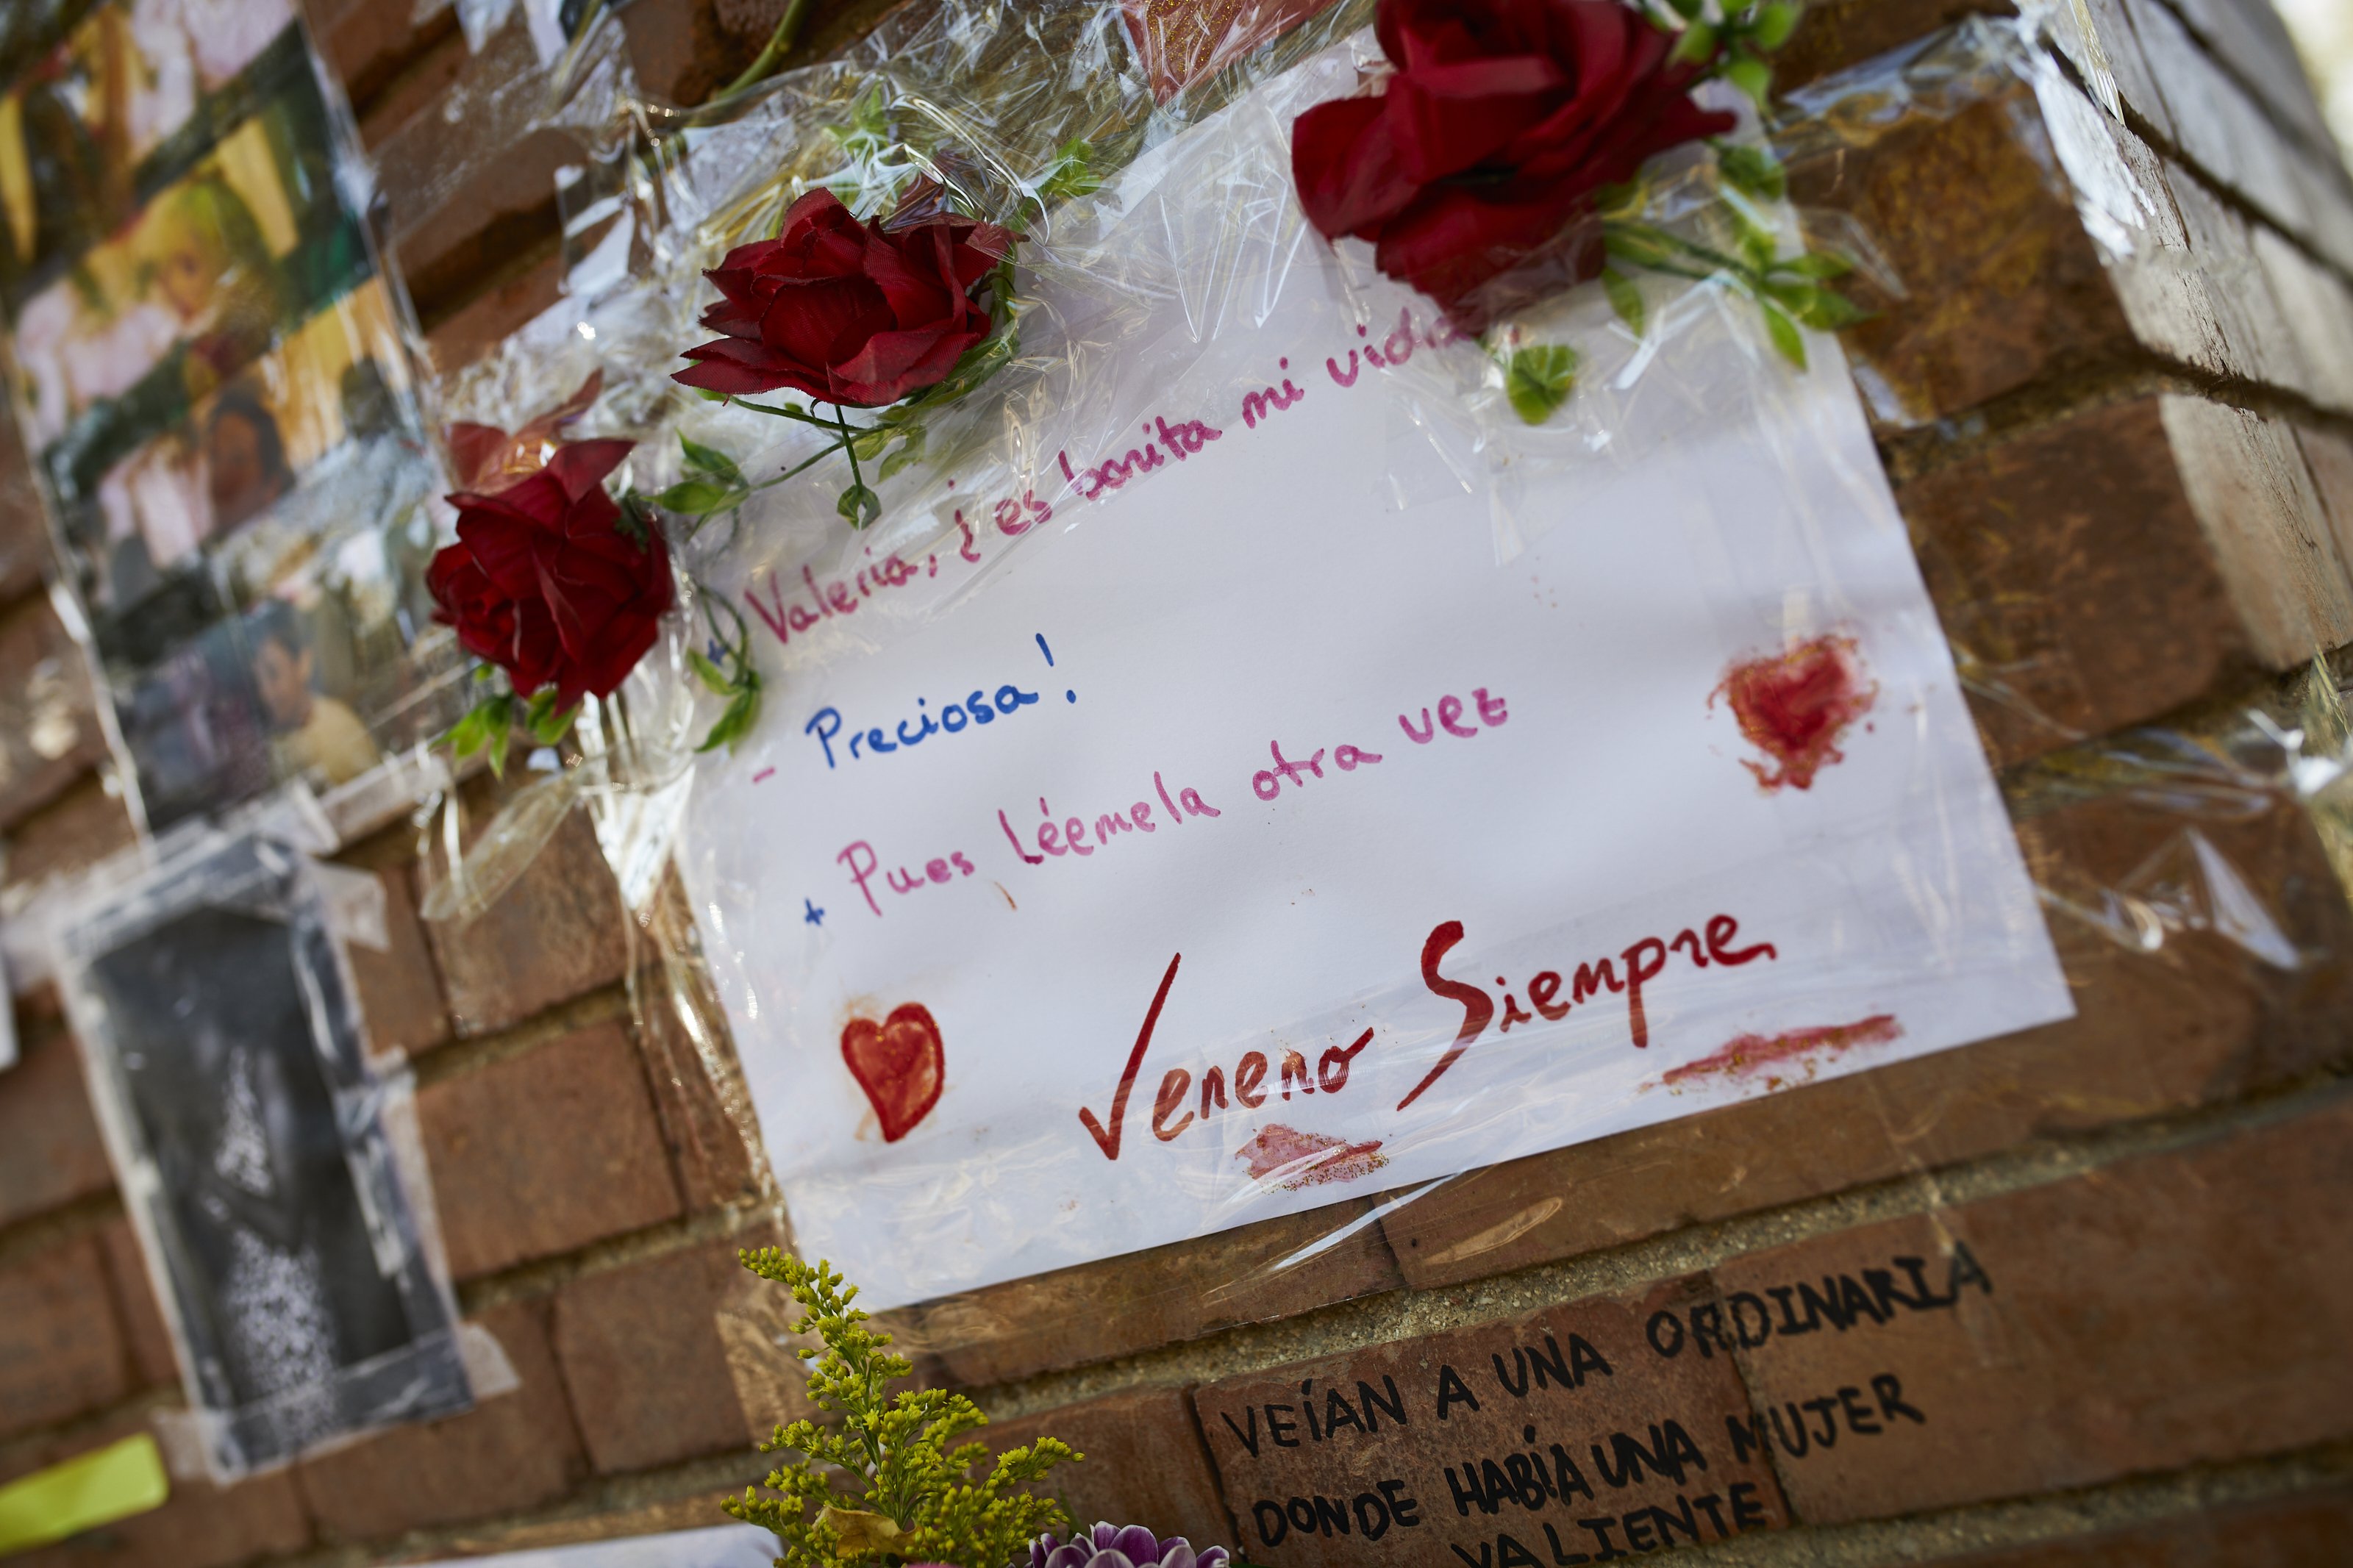 Mensajes de cariño y afecto en el tributo a "La Veneno" en Madrid. | Fuente: Getty Images